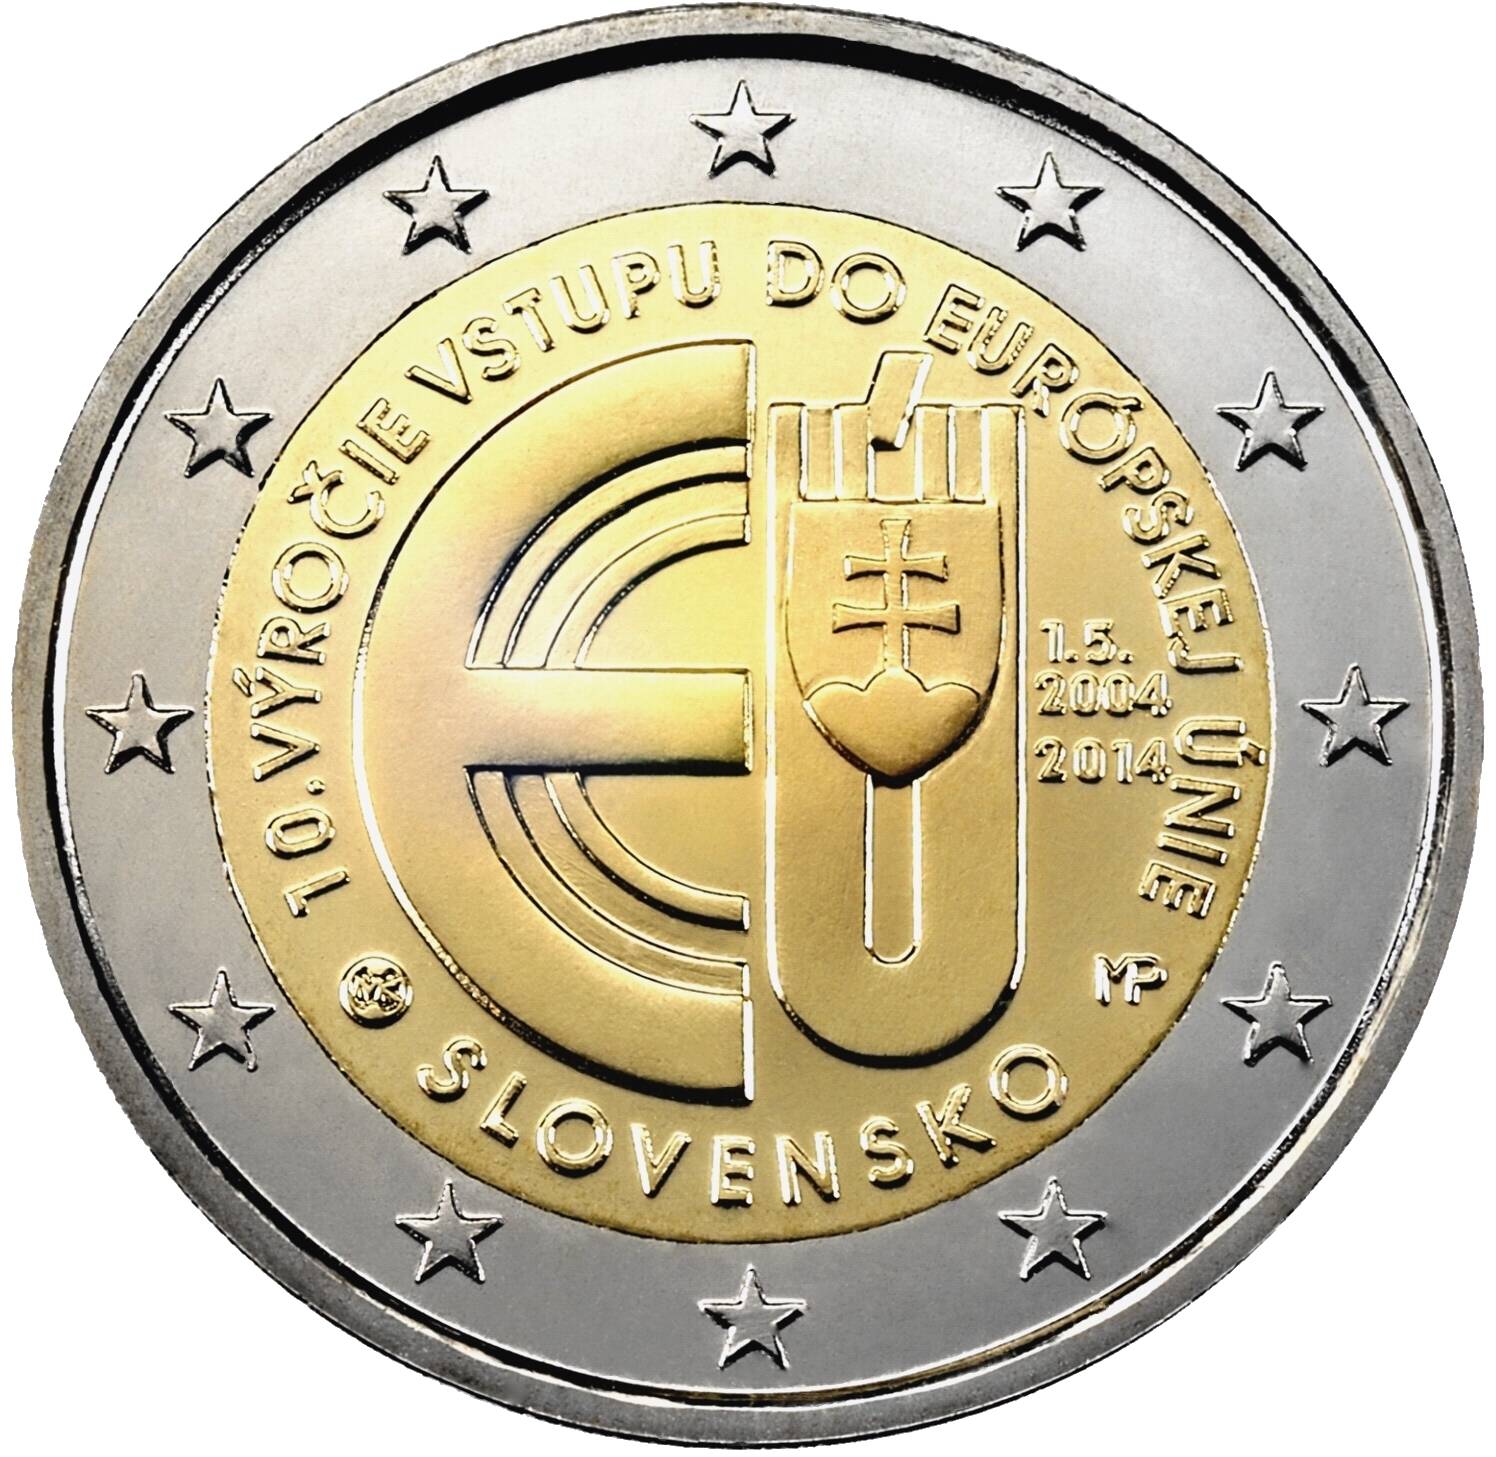 Pamätná dvojeurová minca k 10. výročiu vstupu Slovenskej republiky do Európskej únie